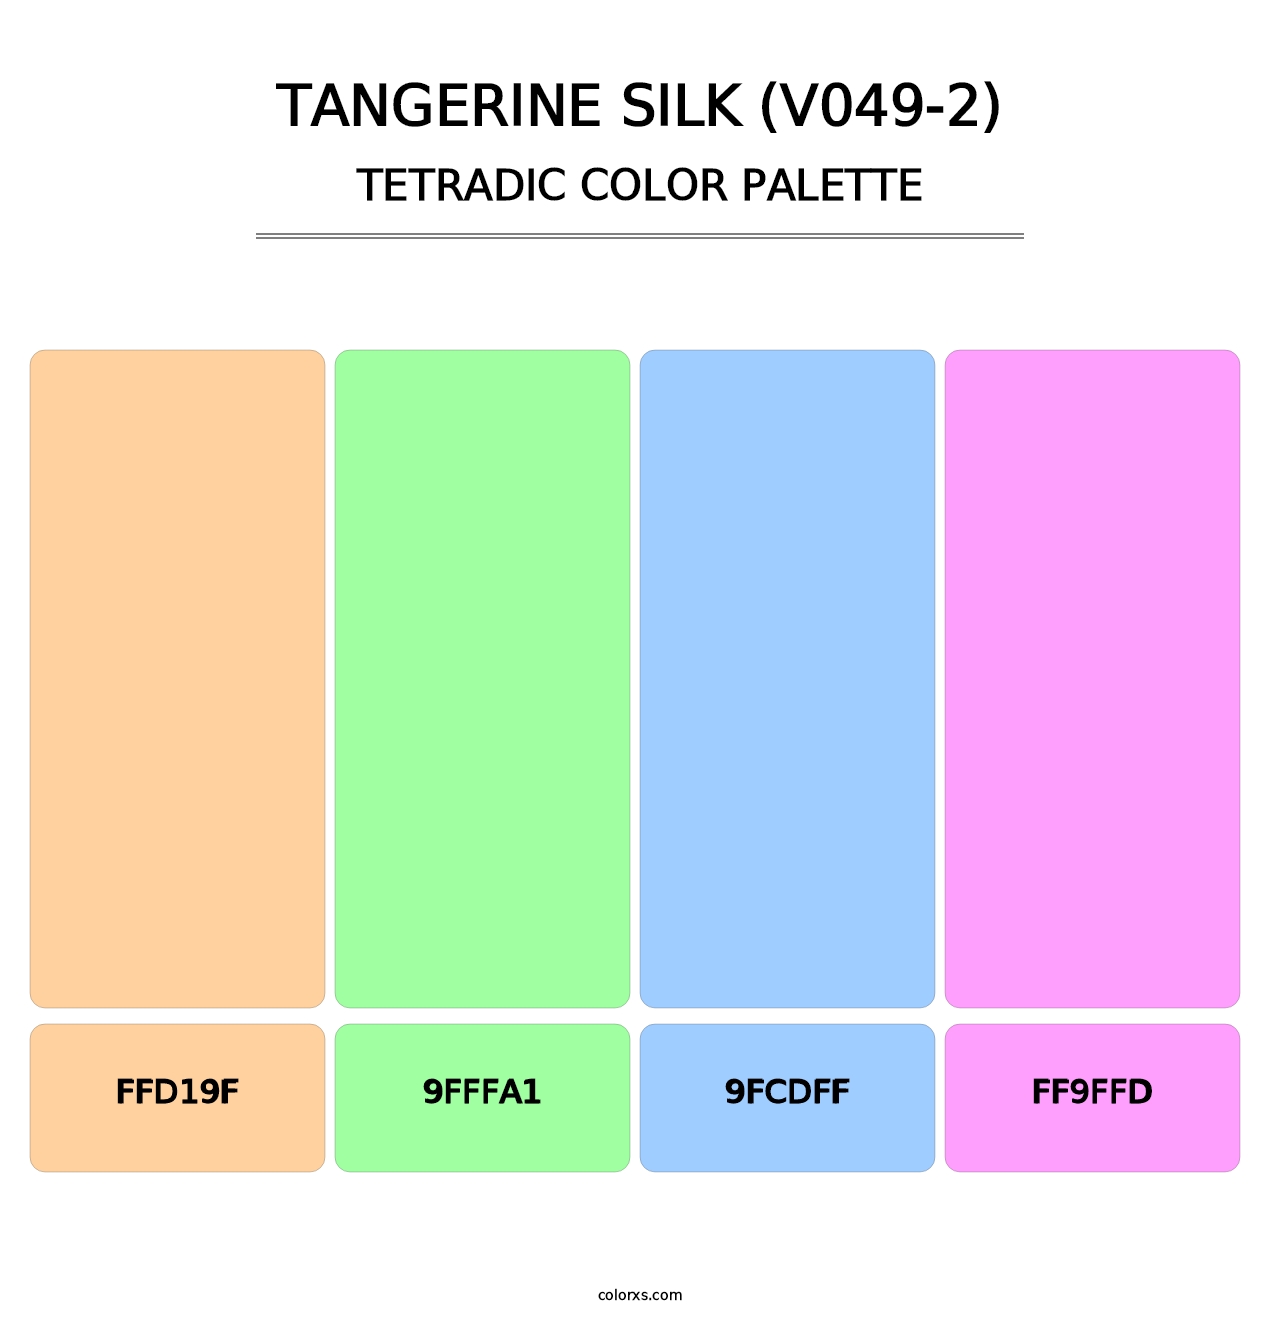 Tangerine Silk (V049-2) - Tetradic Color Palette